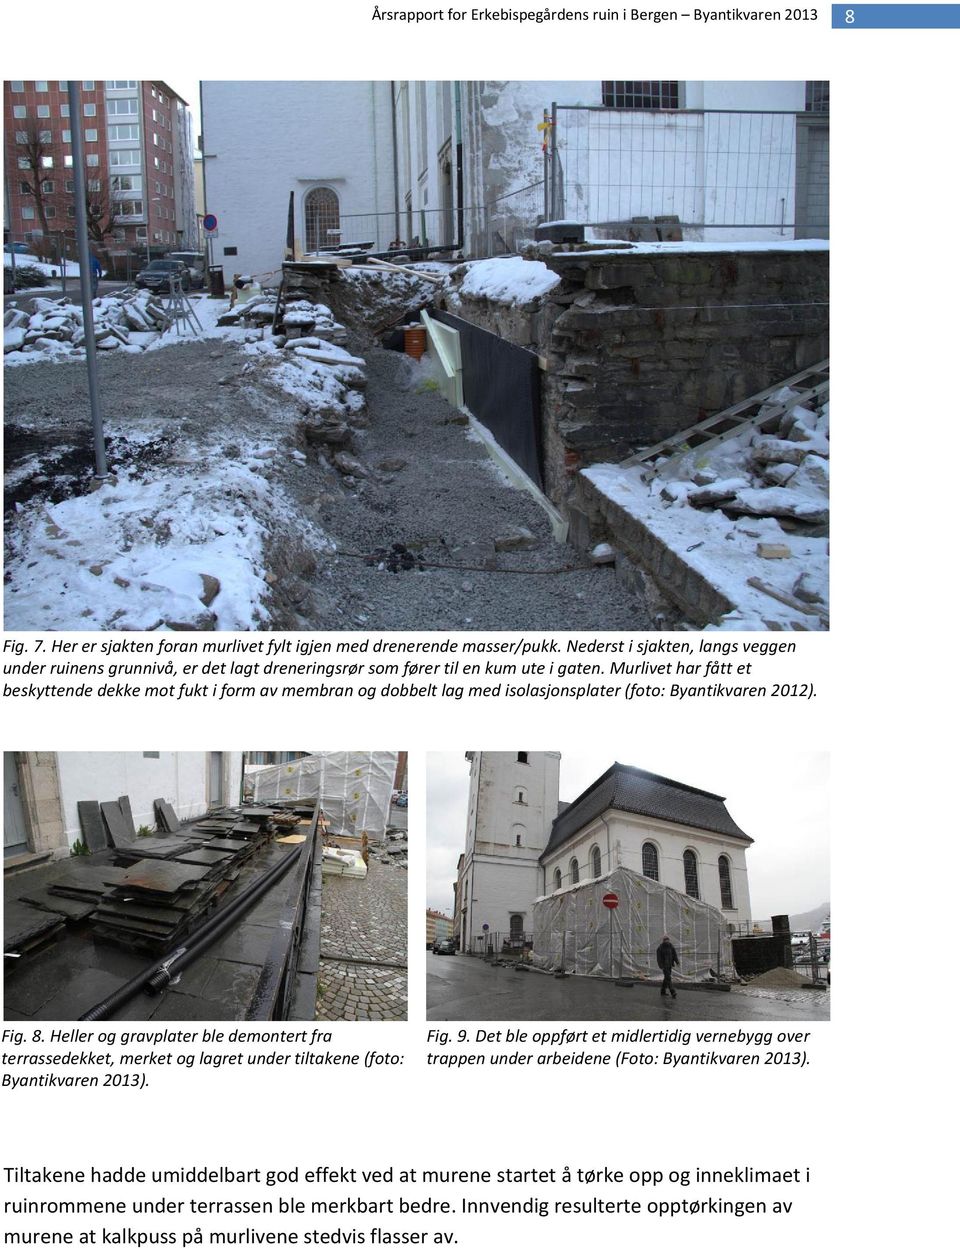 Heller og gravplater ble demontert fra terrassedekket, merket og lagret under tiltakene (foto: Byantikvaren 2013). Fig. 9.